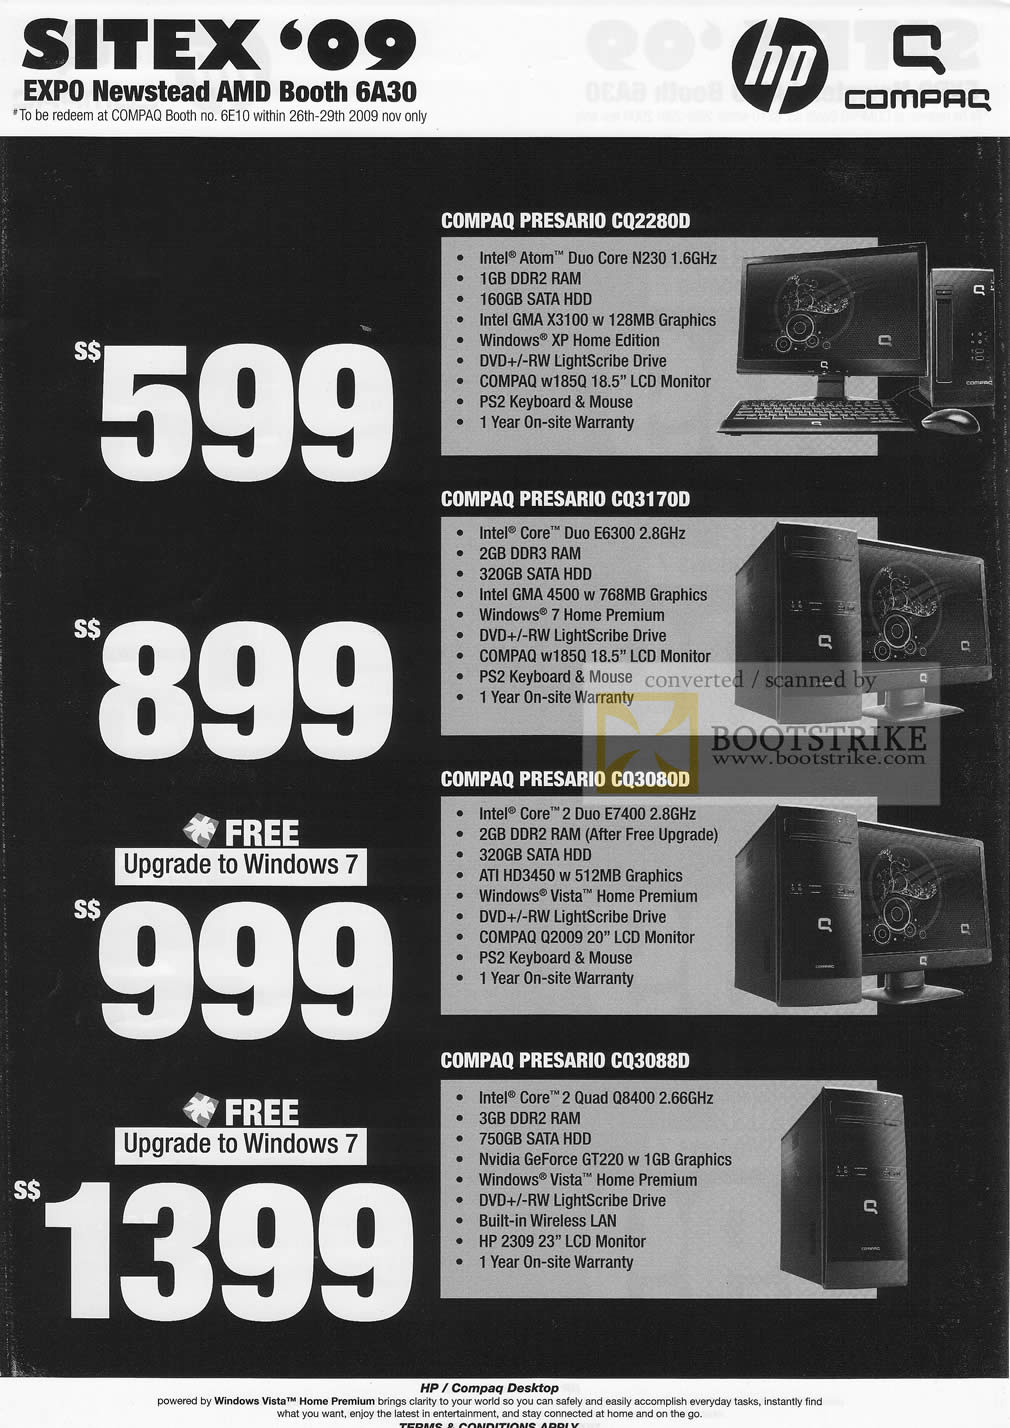 Sitex 2009 price list image brochure of HP Compaq Presario Desktop PC CQ2280D CQ3170D CQ3080D CQ3088D Newstead